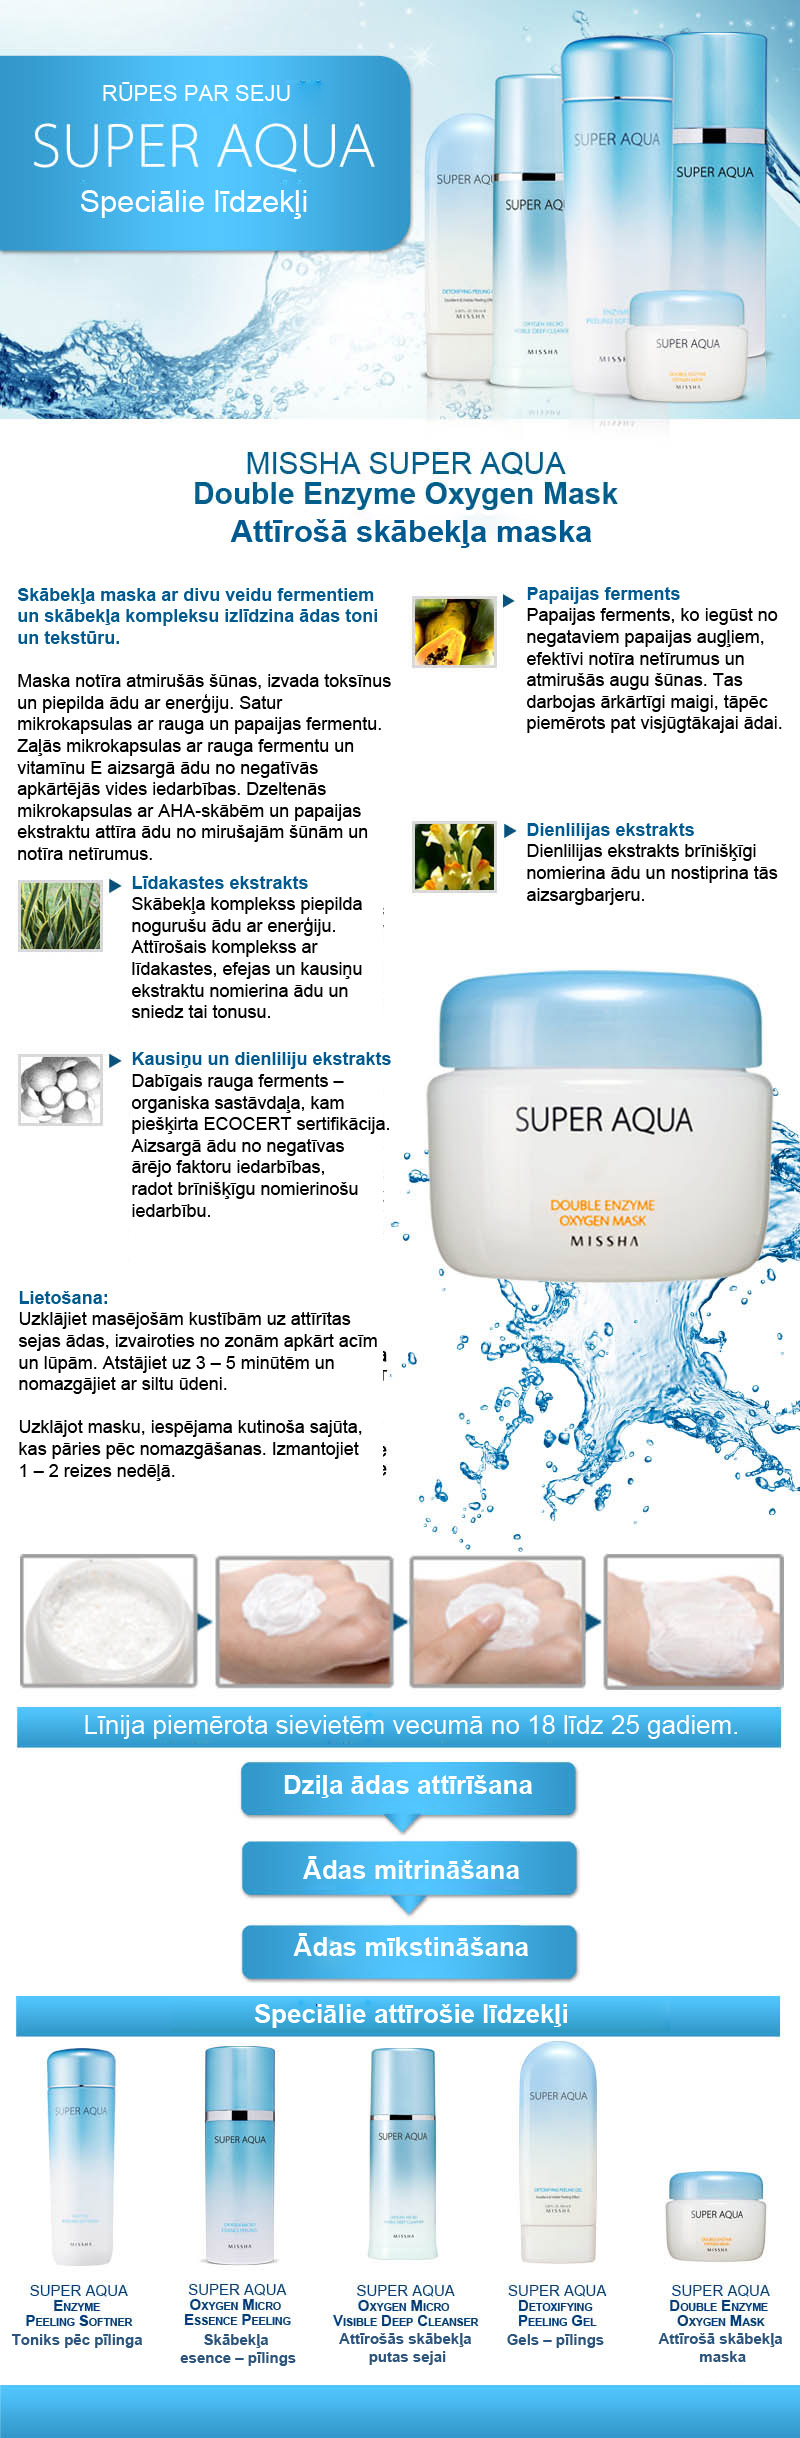 Super Aqua Double Enzyme Oxygen Mask 